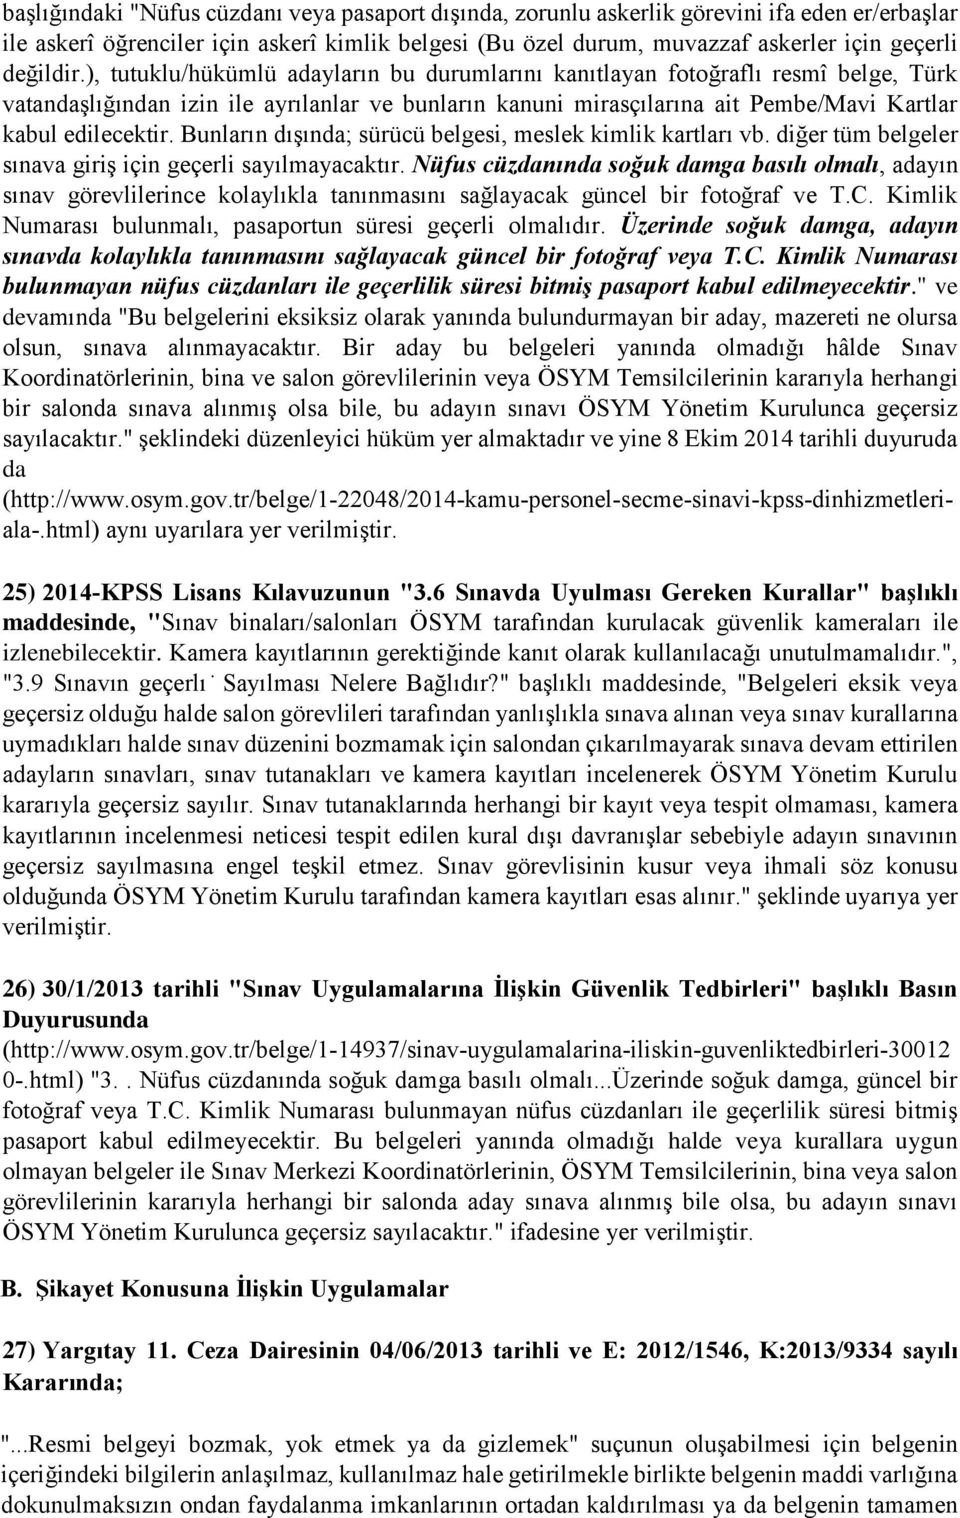 ), tutuklu/hükümlü adayların bu durumlarını kanıtlayan fotoğraflı resmî belge, Türk vatandaşlığından izin ile ayrılanlar ve bunların kanuni mirasçılarına ait Pembe/Mavi Kartlar kabul edilecektir.